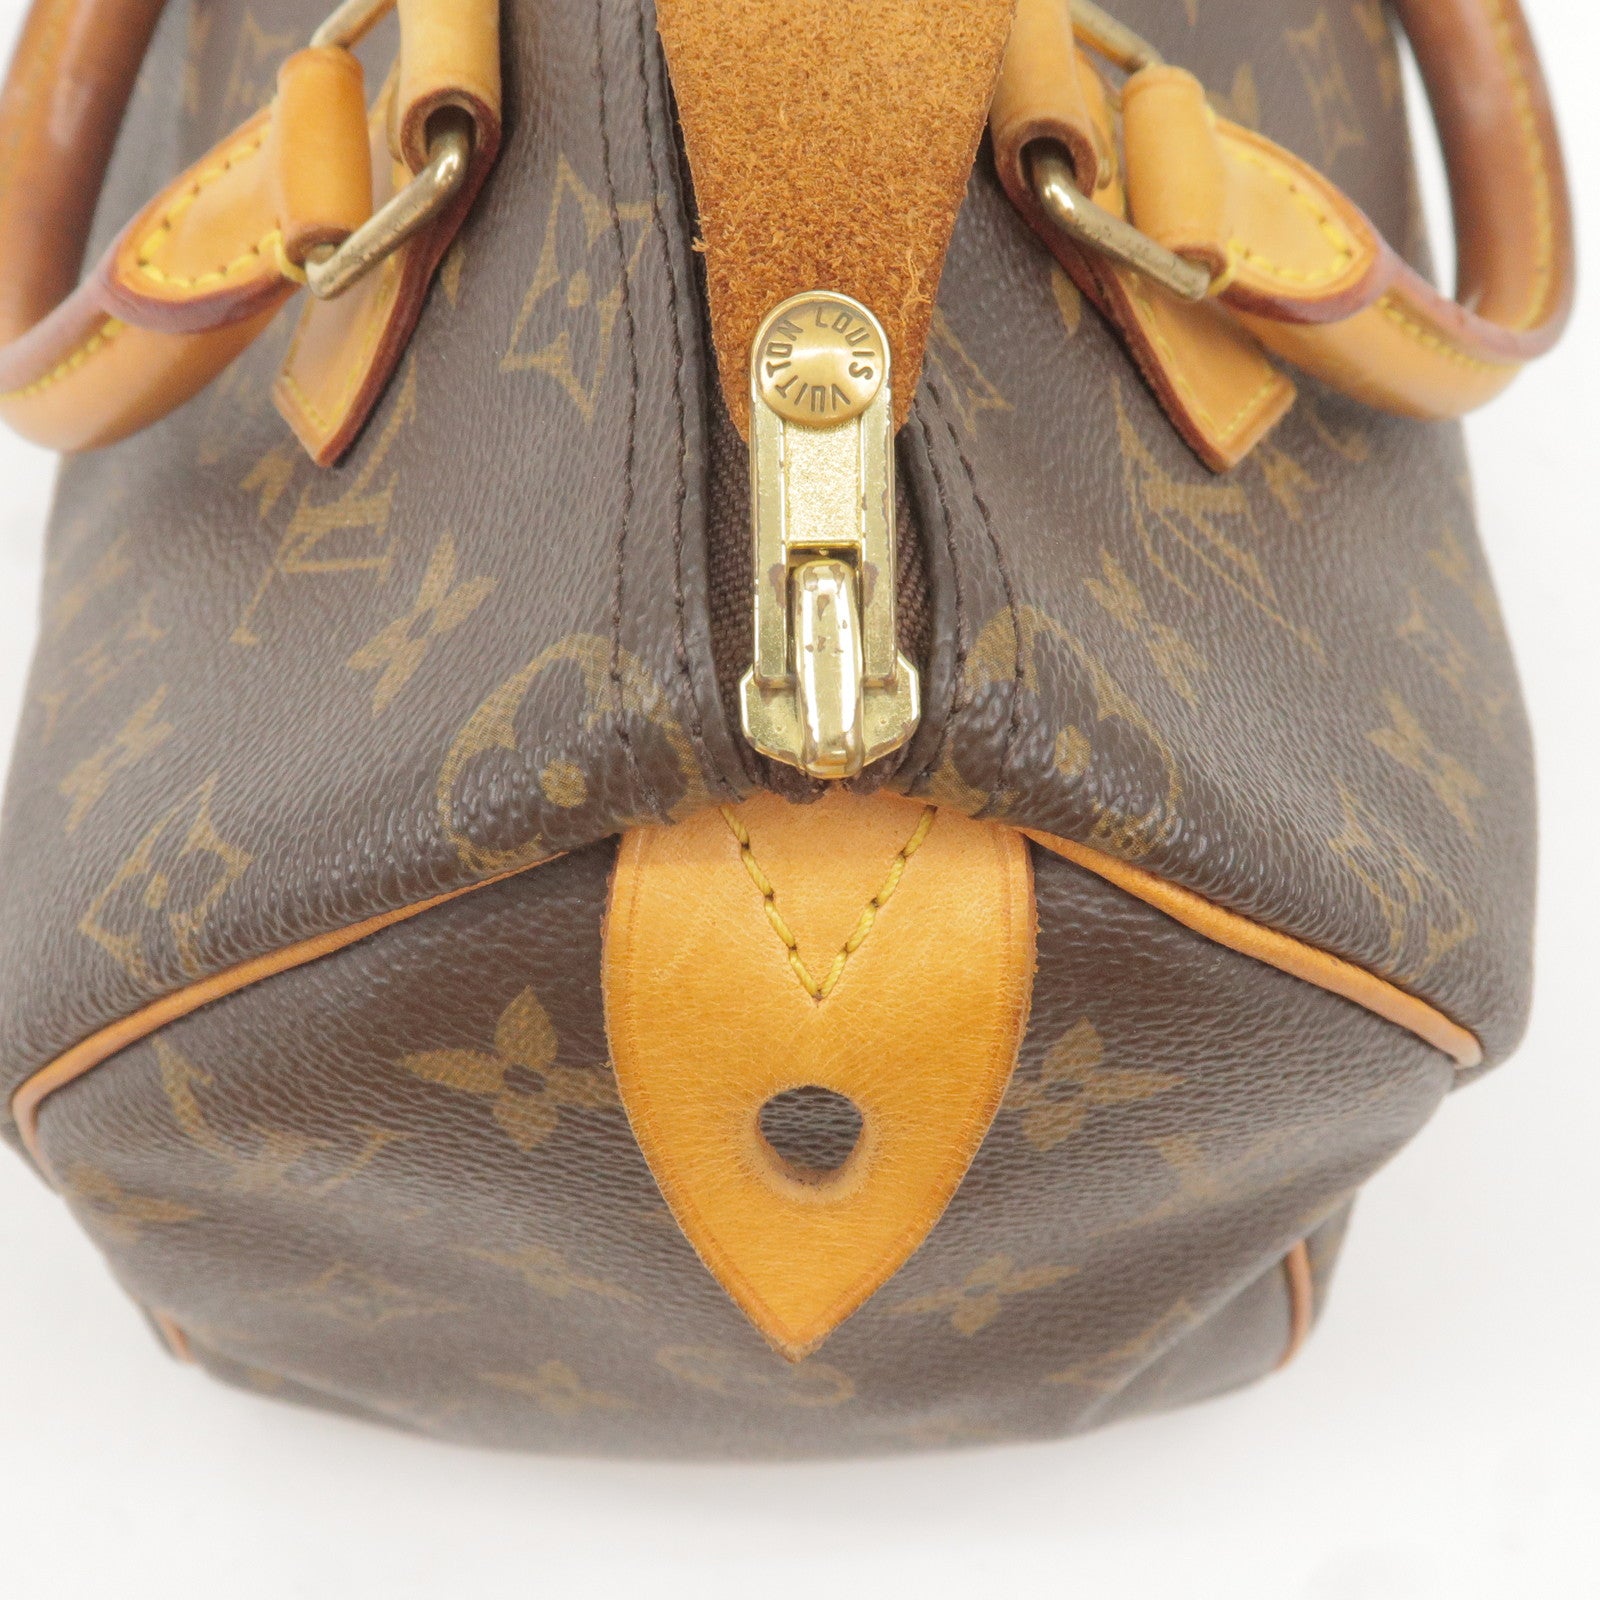 LOUIS VUITTON Monogram Speedy 25 Brown Hand Bag